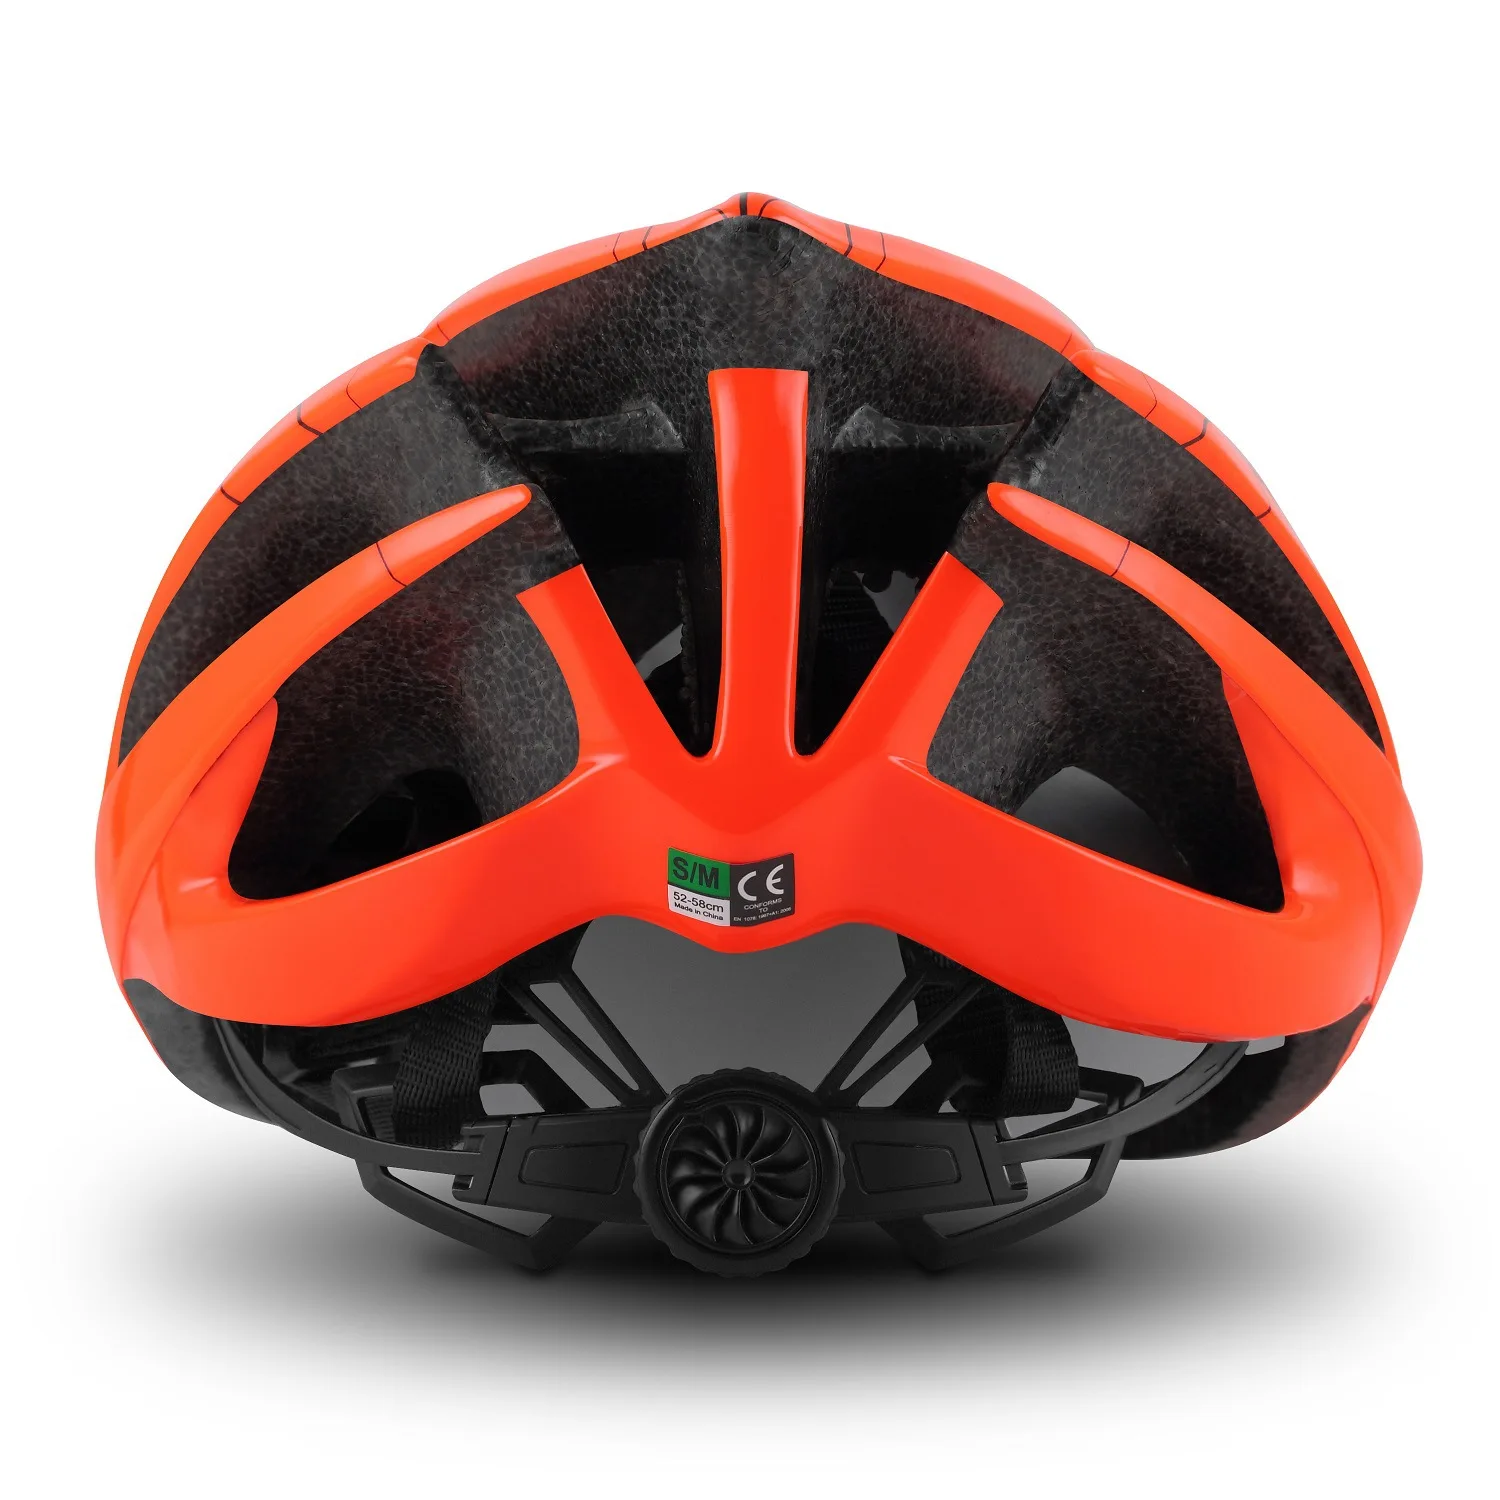 Profissional de Triatlo de capacete de Ciclismo equipe de Corrida de Estrada de Bicicleta de Montanha do Capacete esportes ao ar livre Todo-o-terreno Capacete de Bicicleta MTB Cascos